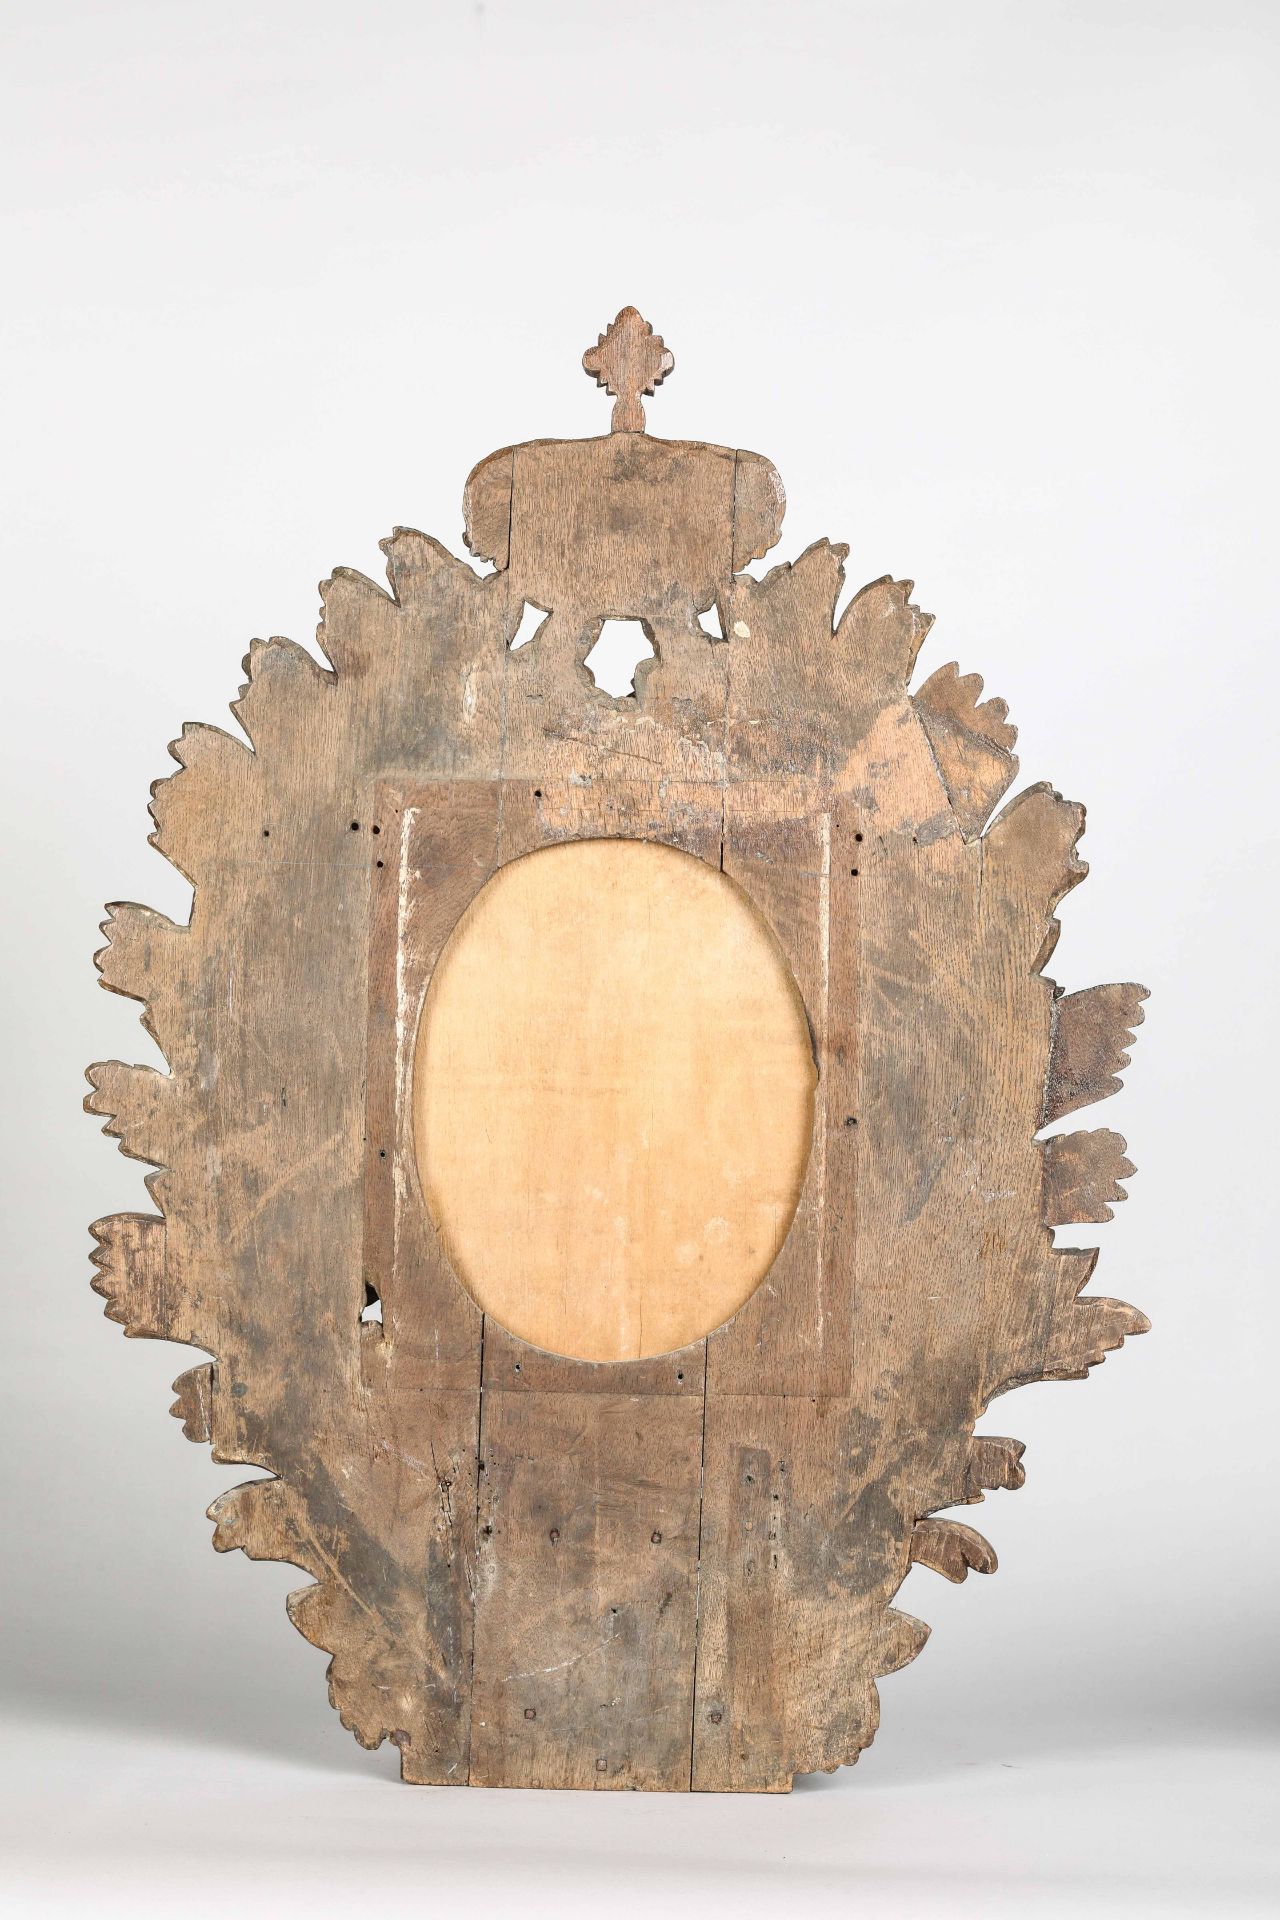 Paire de miroirs ovales a encadrements de guirlandes de feuillages surmontés d'une couronne Le - Image 4 of 4